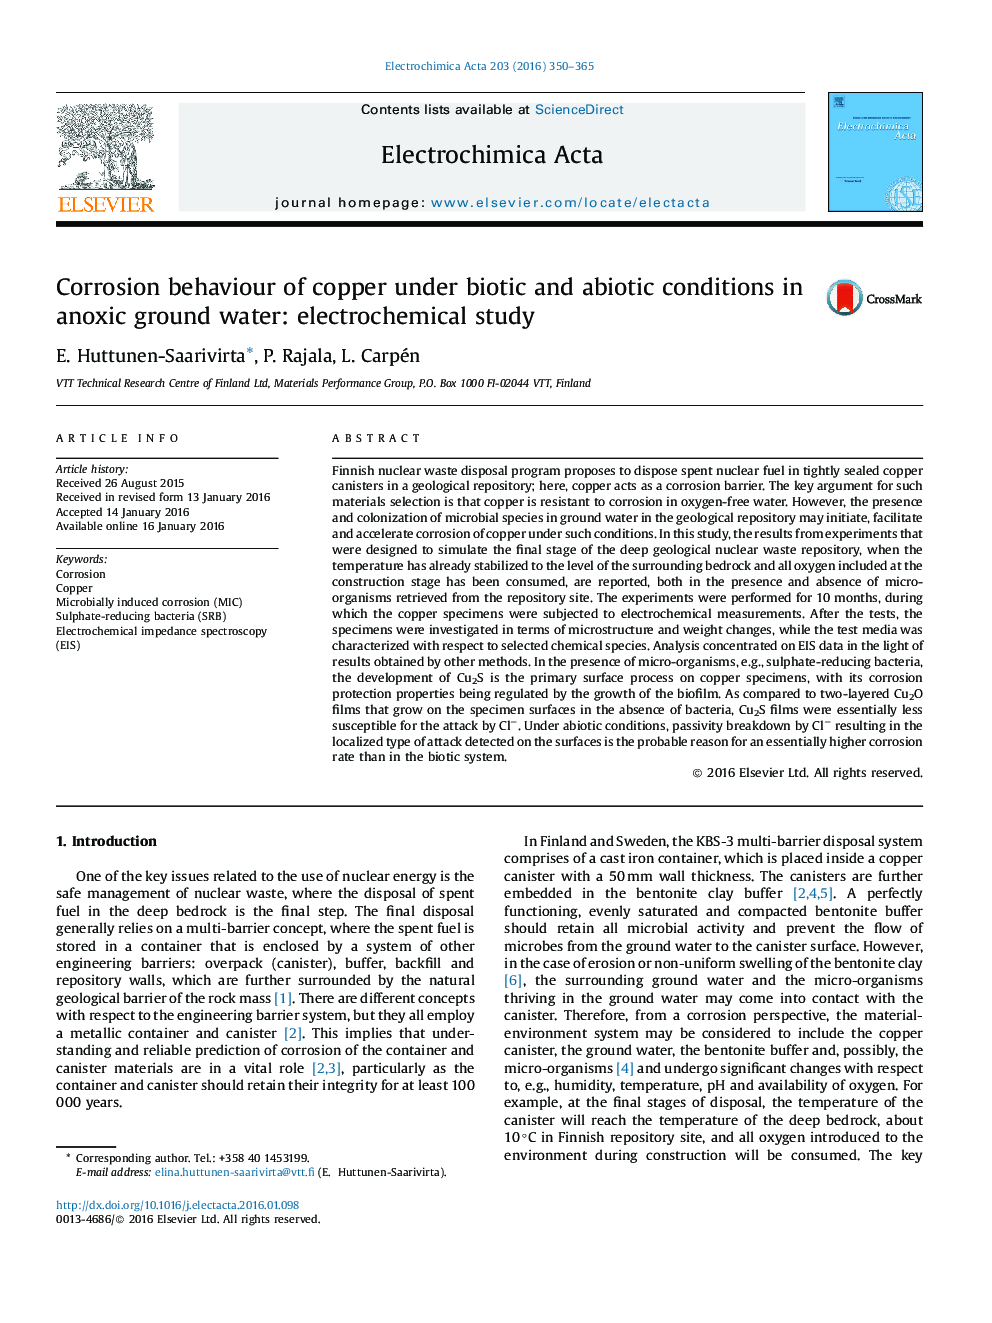 رفتار خوردگی مس در شرایط زیستی و زیستی در آبهای زیرزمینی: مطالعه الکتروشیمیایی 